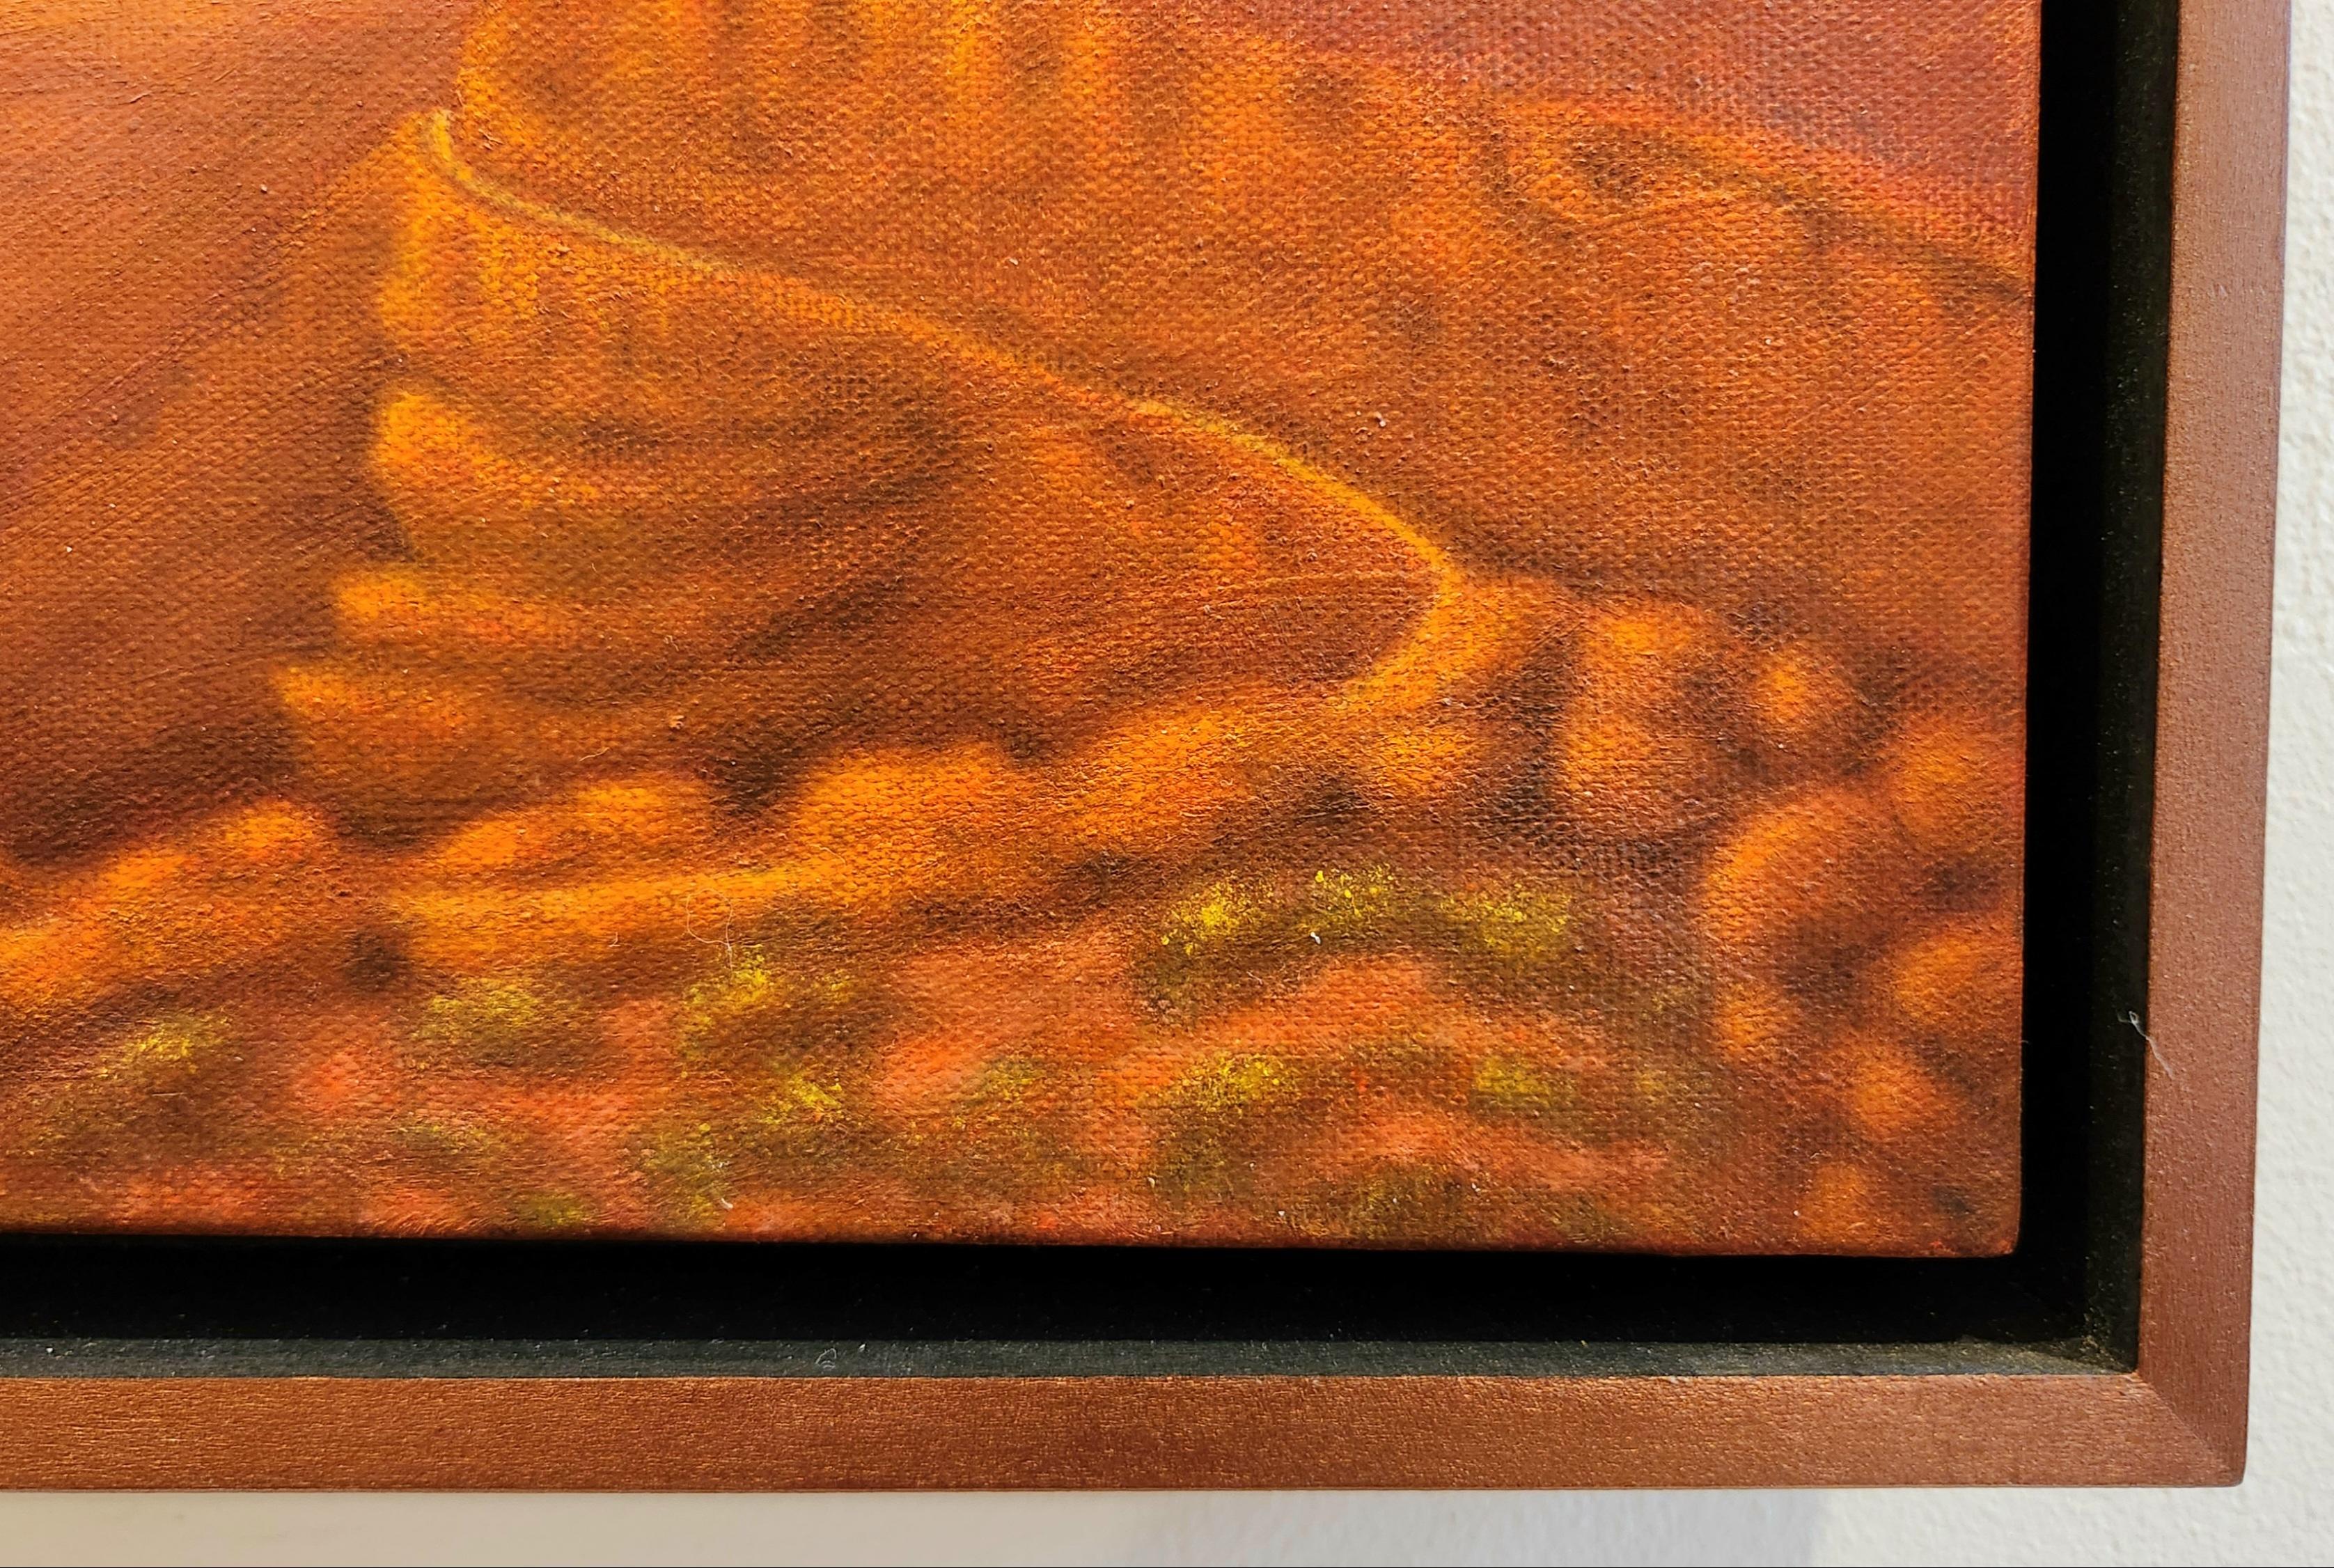 Dieses Ölgemälde auf Leinwand zeigt eine Landschaft im Südwesten. Das Werk ist mit Gold- und Kupferacrylfarben in den Bereichen des Himmels bzw. der Landform untermalt, was die Landschaft zum Leuchten bringt.  Kadmiumgelbe und rote Farbtöne strahlen